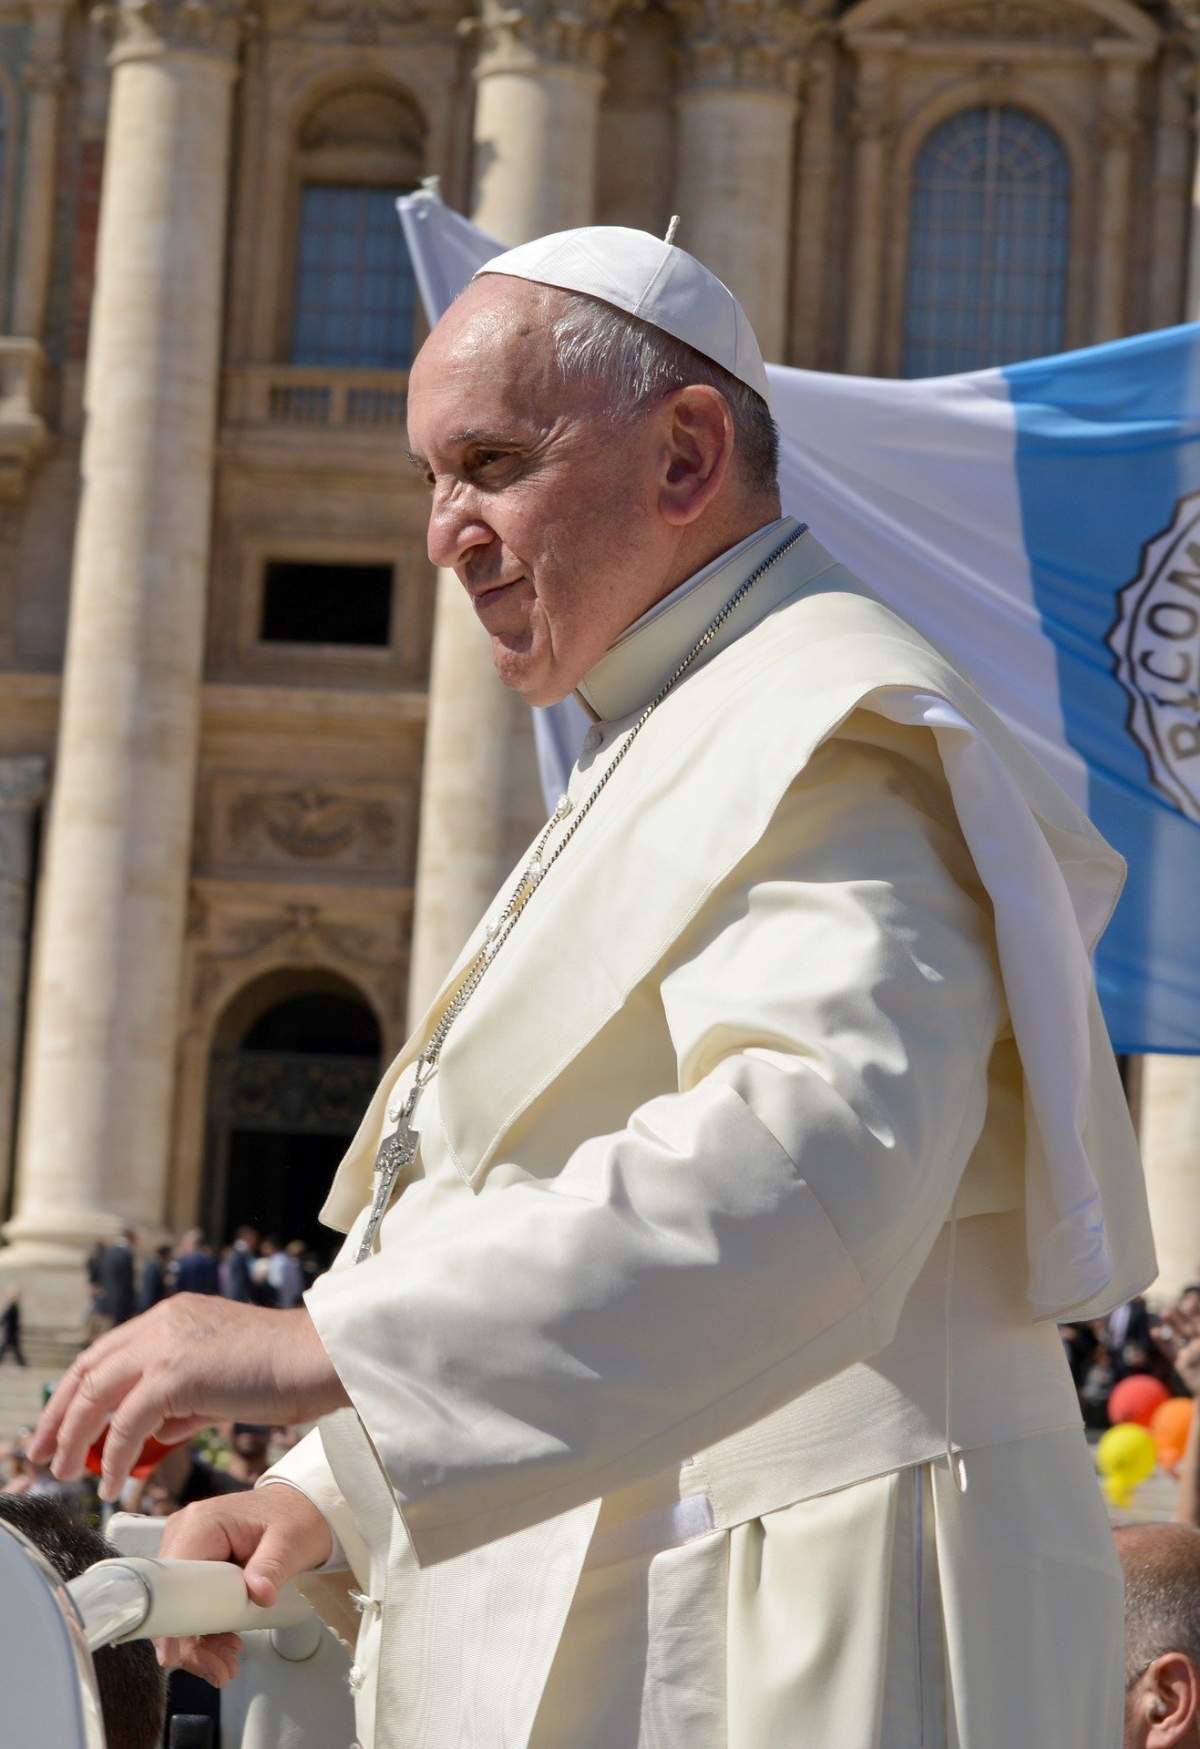 Mesajul emoționant al Papei Francisc: "Astăzi este duminica lacrimilor"